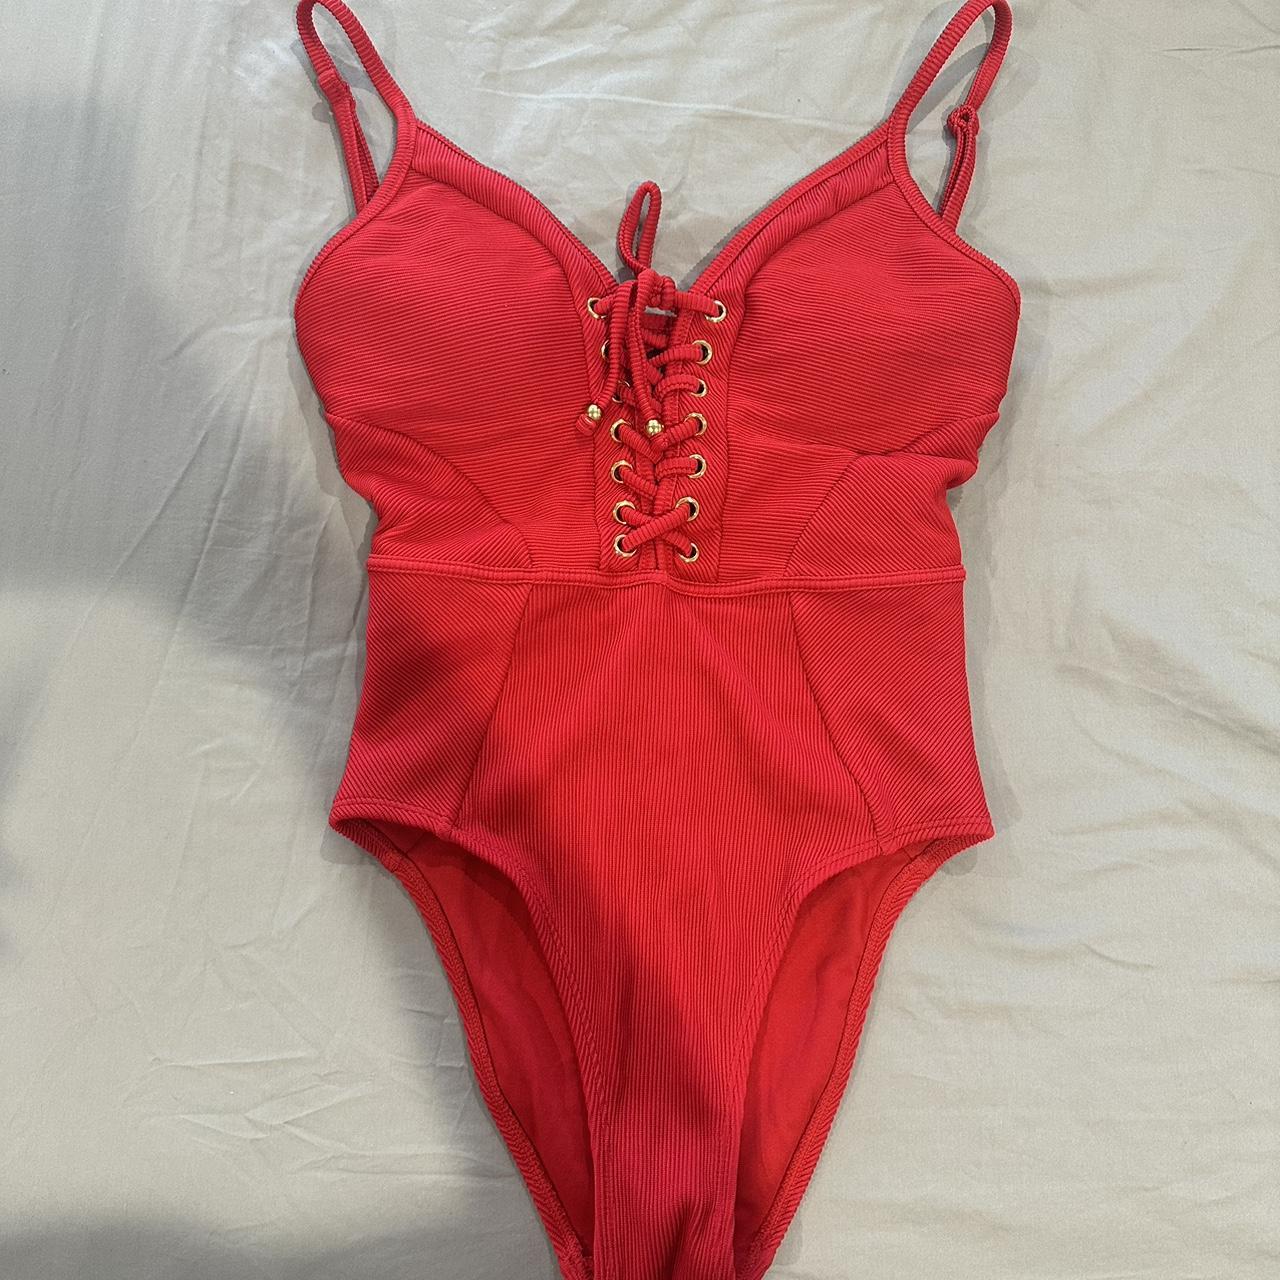 Bras n things red one piece swimwear size 8 - Depop